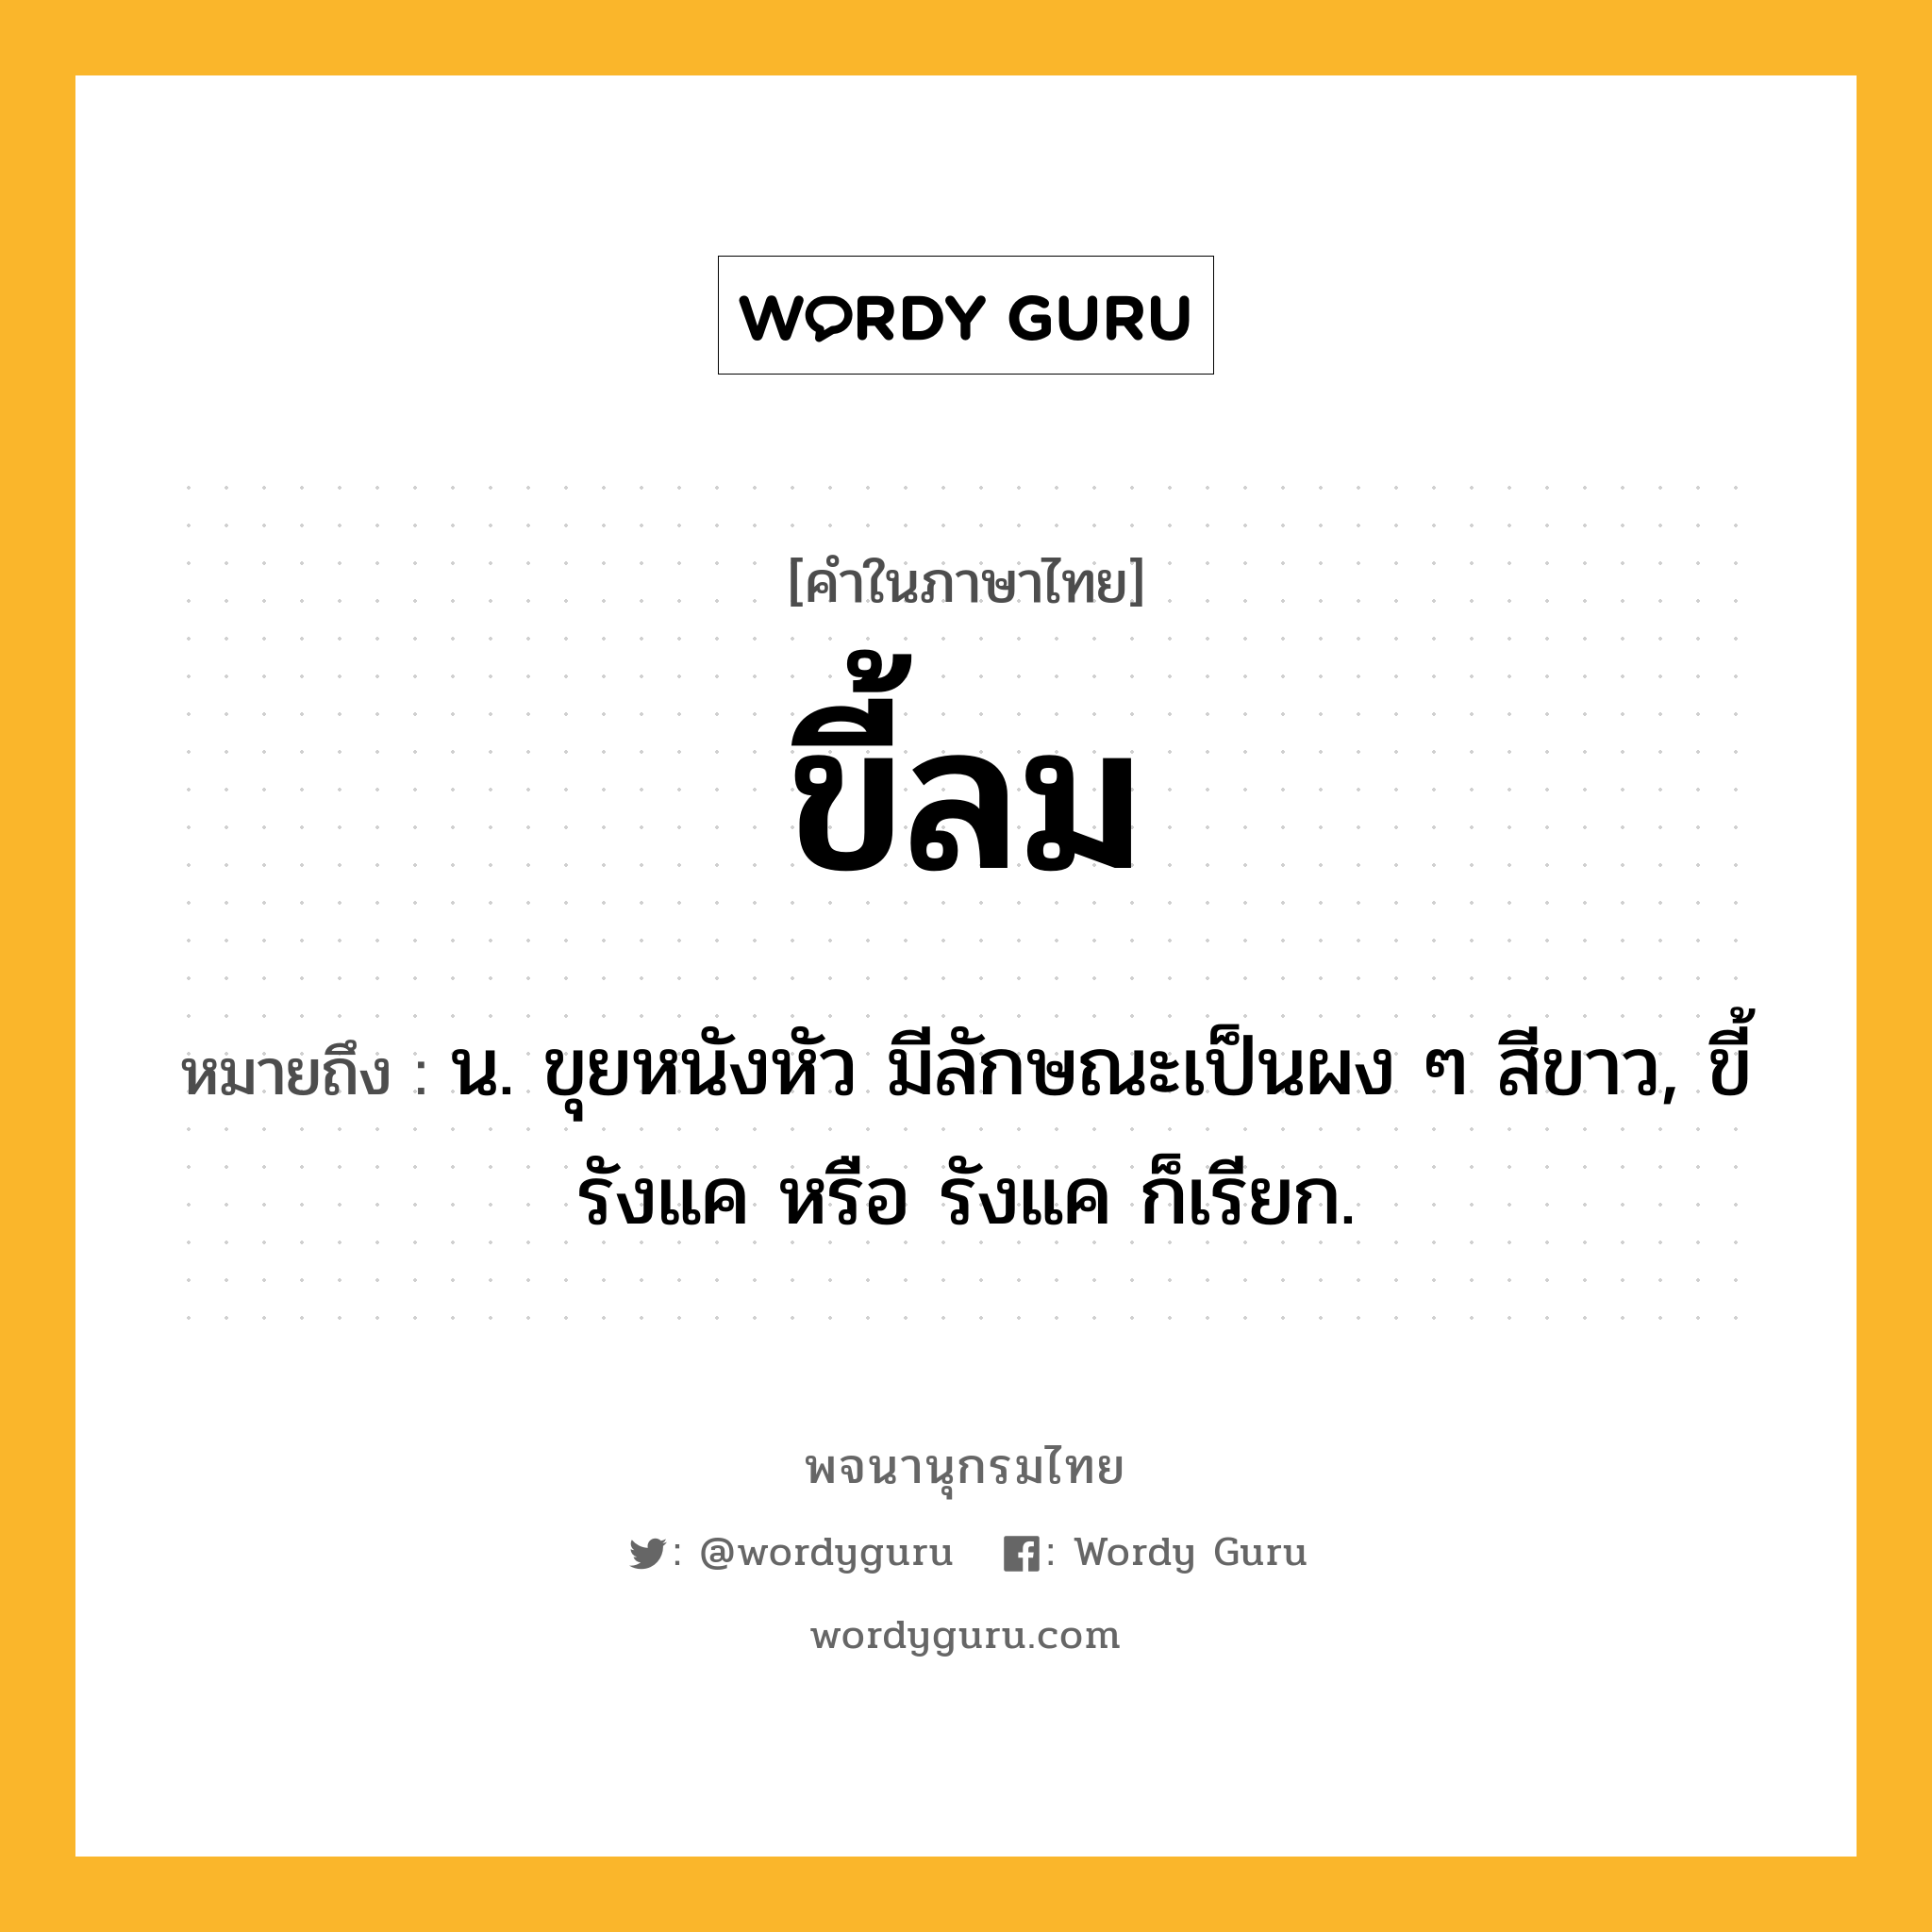 ขี้ลม หมายถึงอะไร?, คำในภาษาไทย ขี้ลม หมายถึง น. ขุยหนังหัว มีลักษณะเป็นผง ๆ สีขาว, ขี้รังแค หรือ รังแค ก็เรียก.